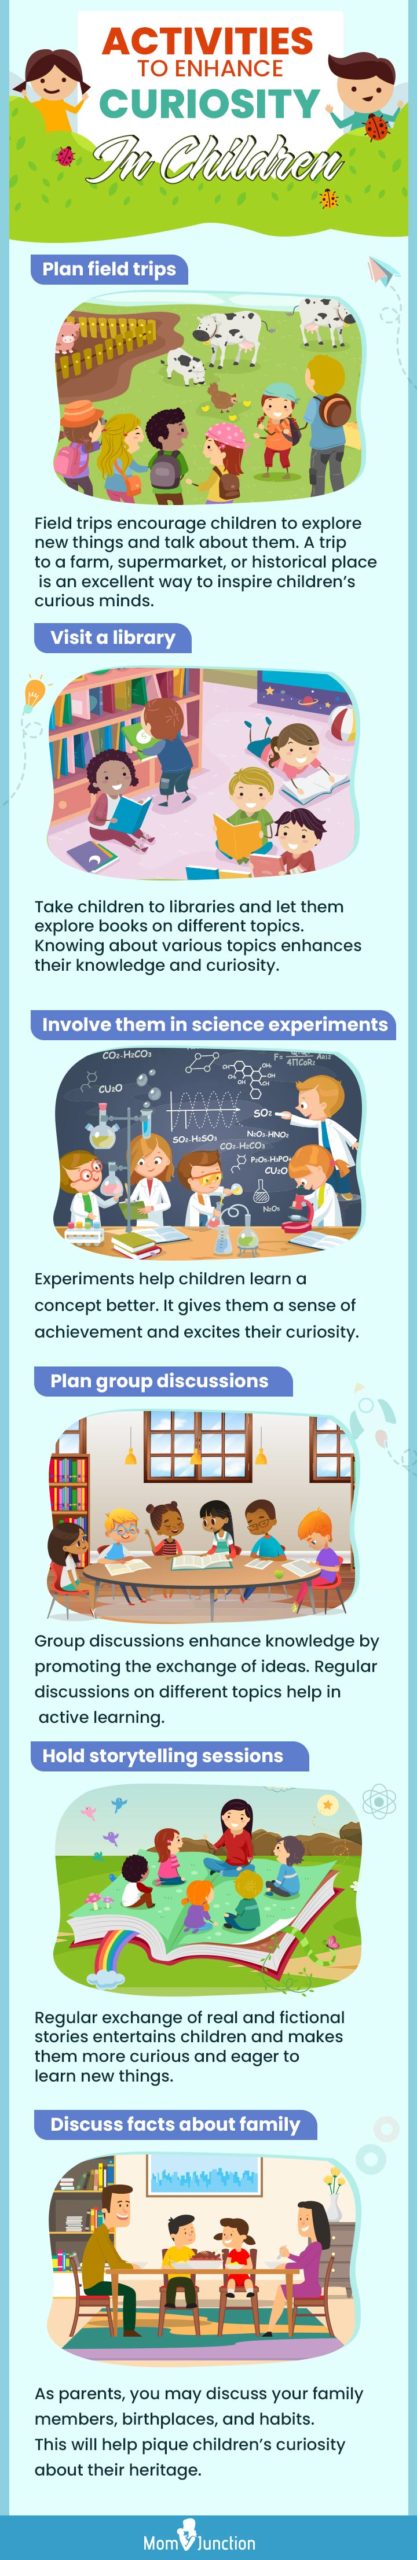 activities to enhance curiosity in children [infographic]